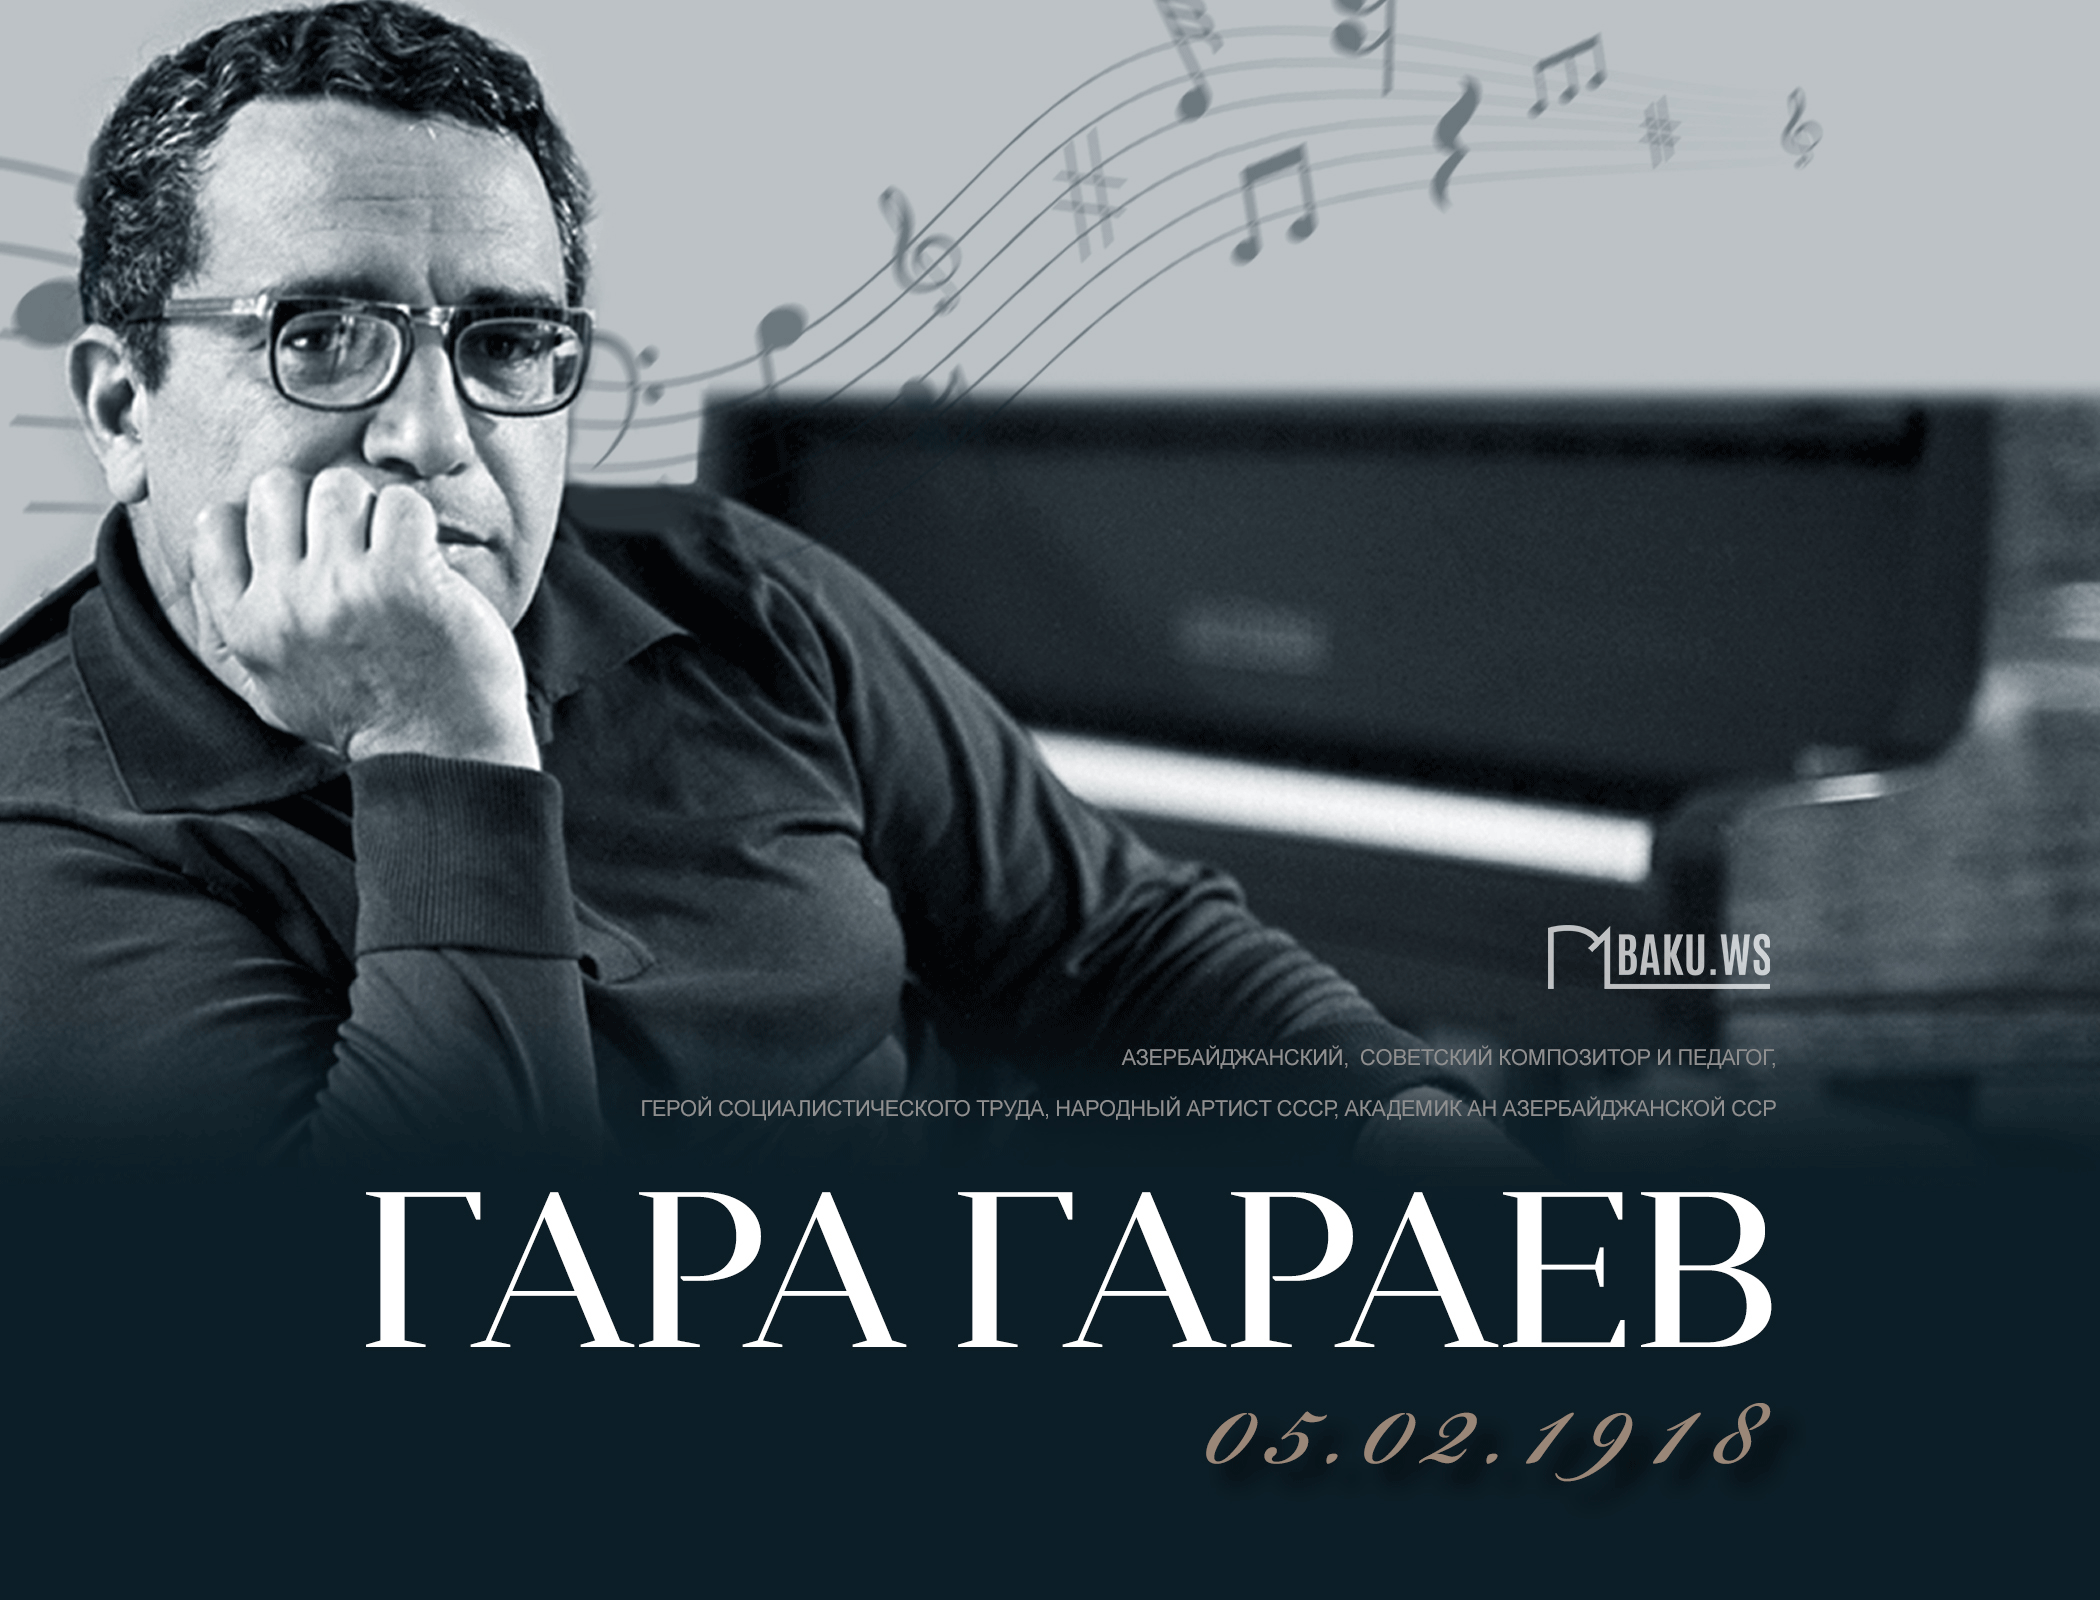 Исполняется 106 лет со дня рождения выдающегося азербайджанского композитора Гара Гараева